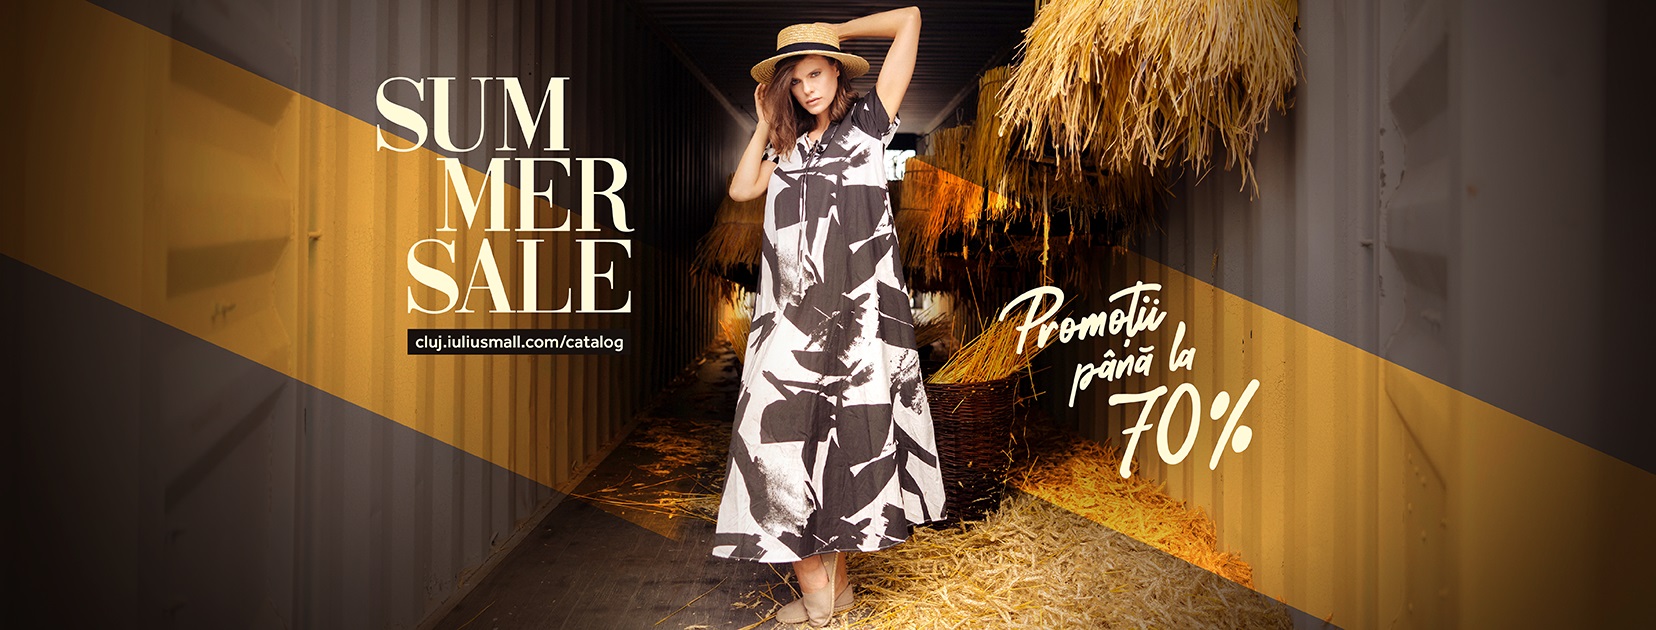 Cucerește vara cu Summer Sale! Reduceri de până la 70% la brandurile din Iulius Mall Cluj.